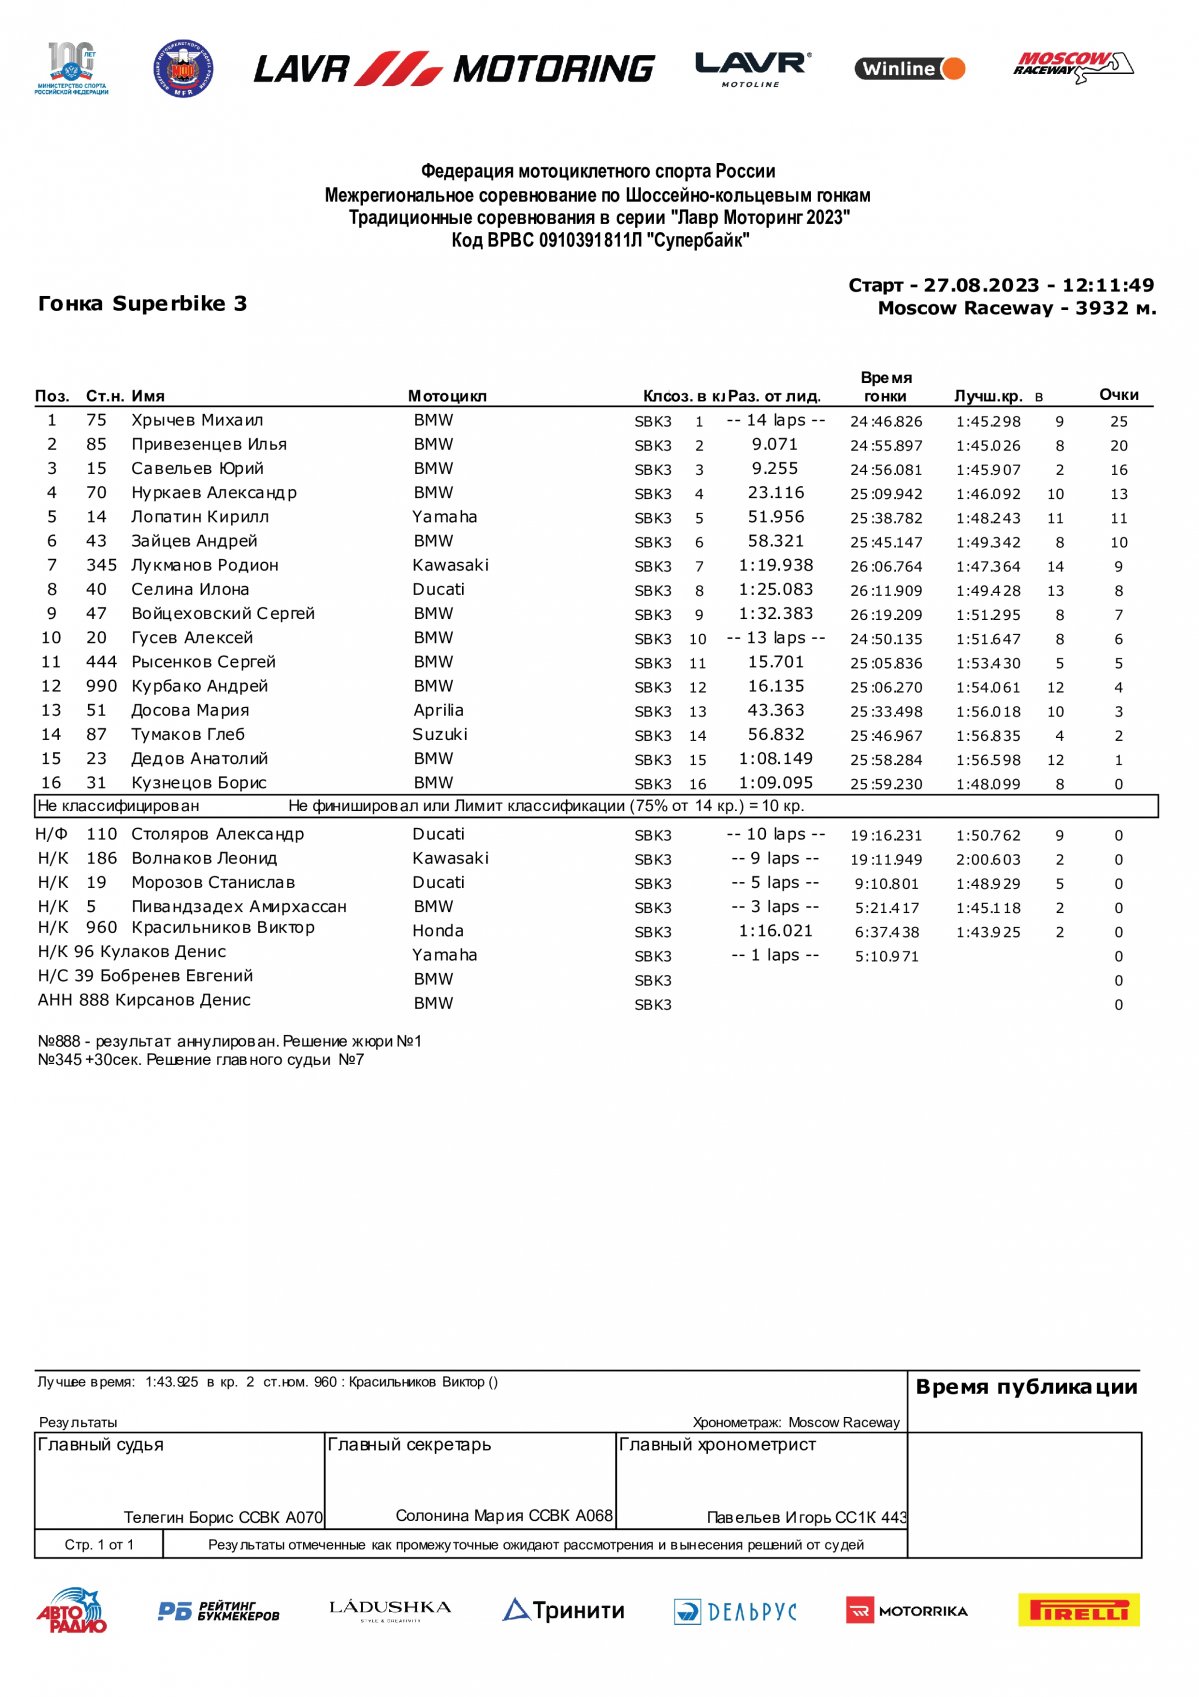 Результаты гонки 6 этапа SBK3 Гран-При Авторадио